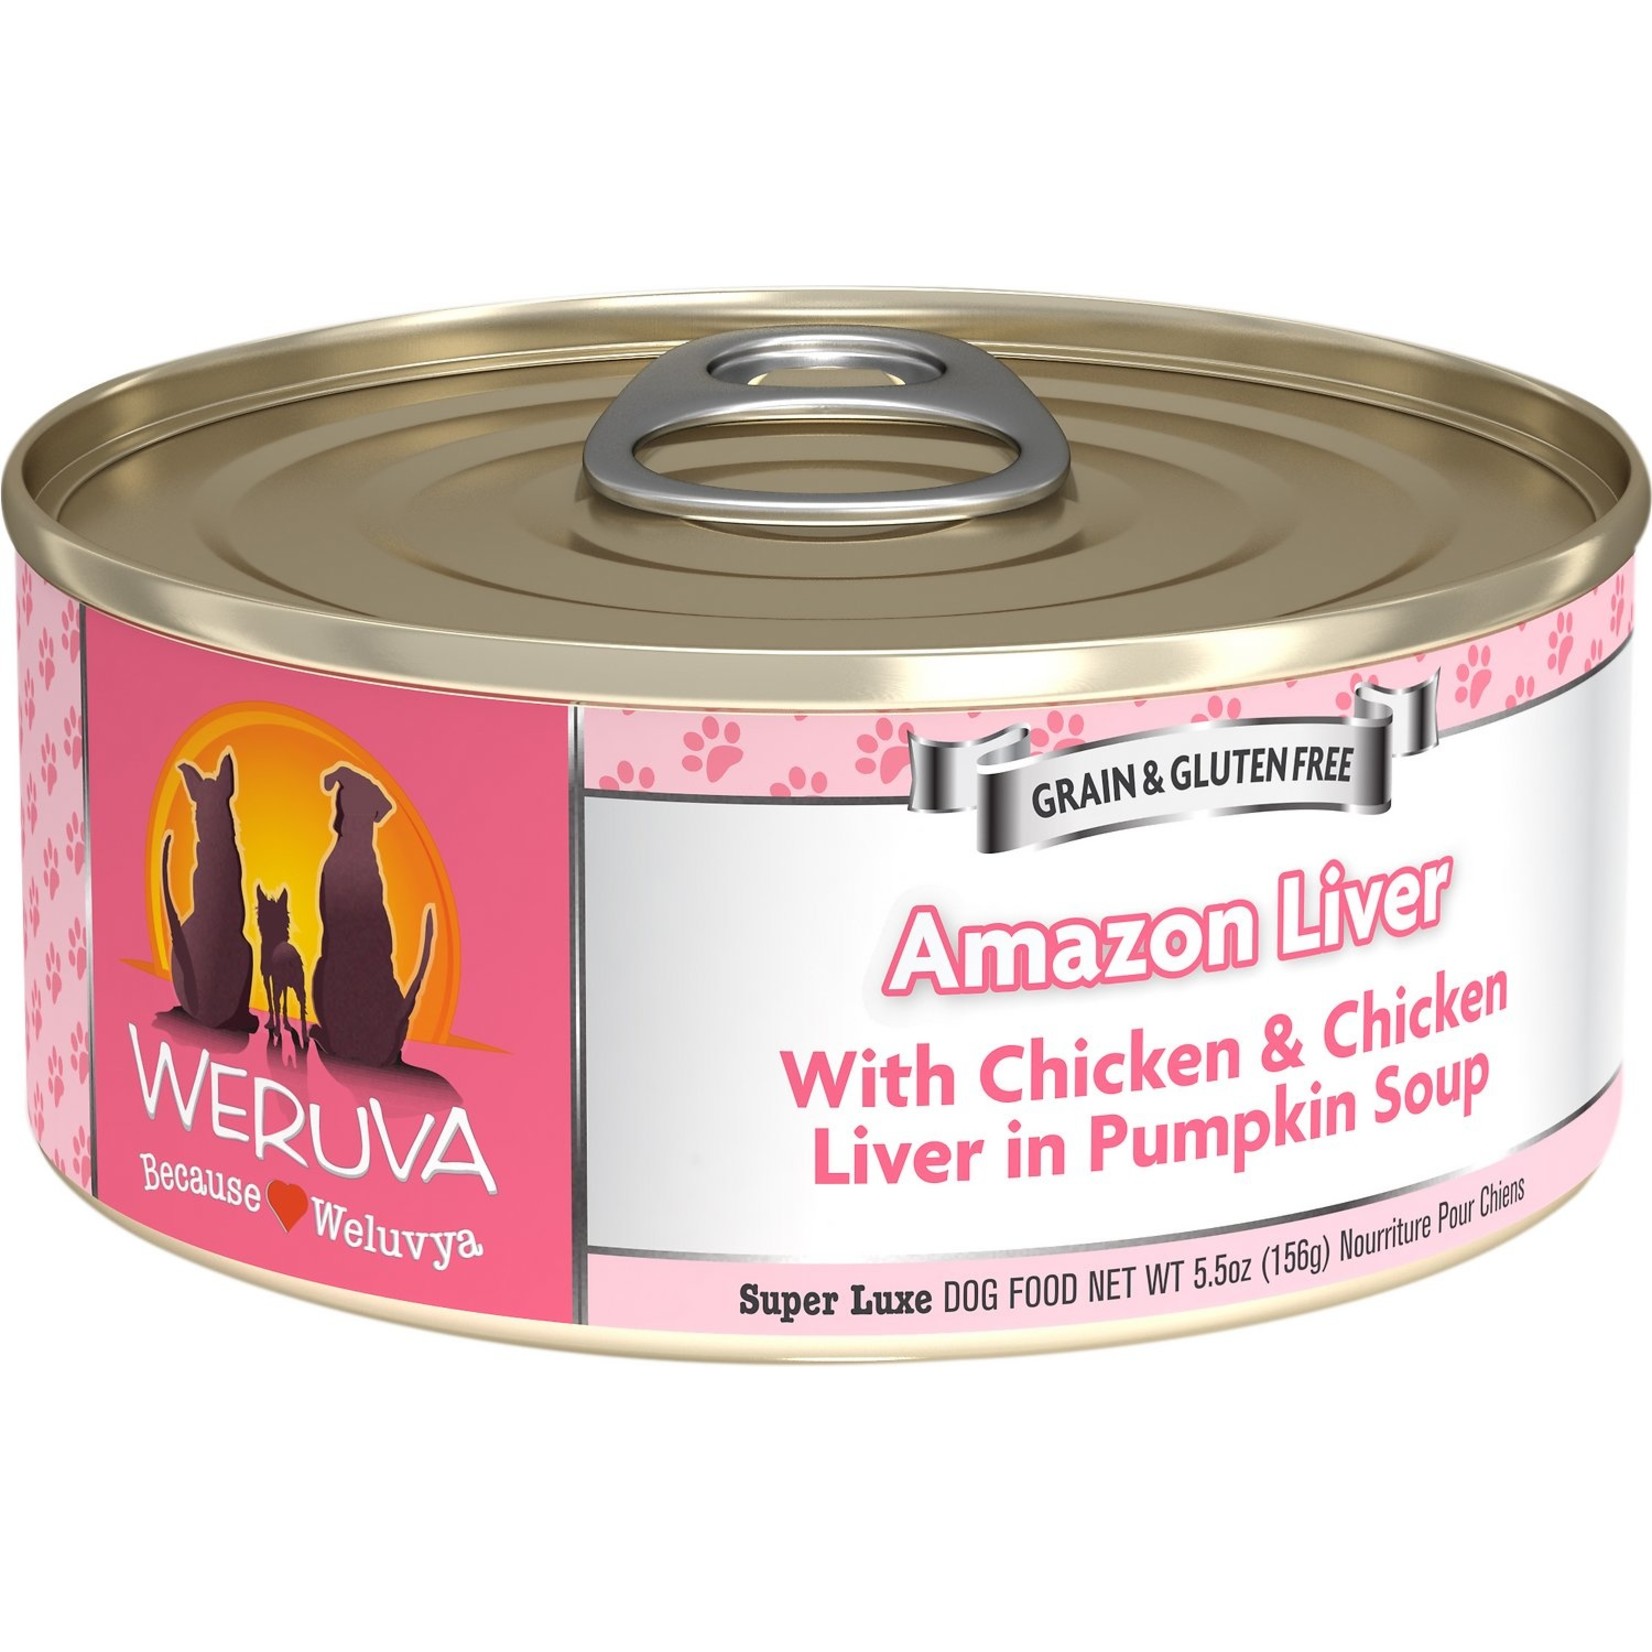 Weruva Weruva Classic Dog - Amazon Liver with Chicken & Chicken Liver in Pumpkin Soup